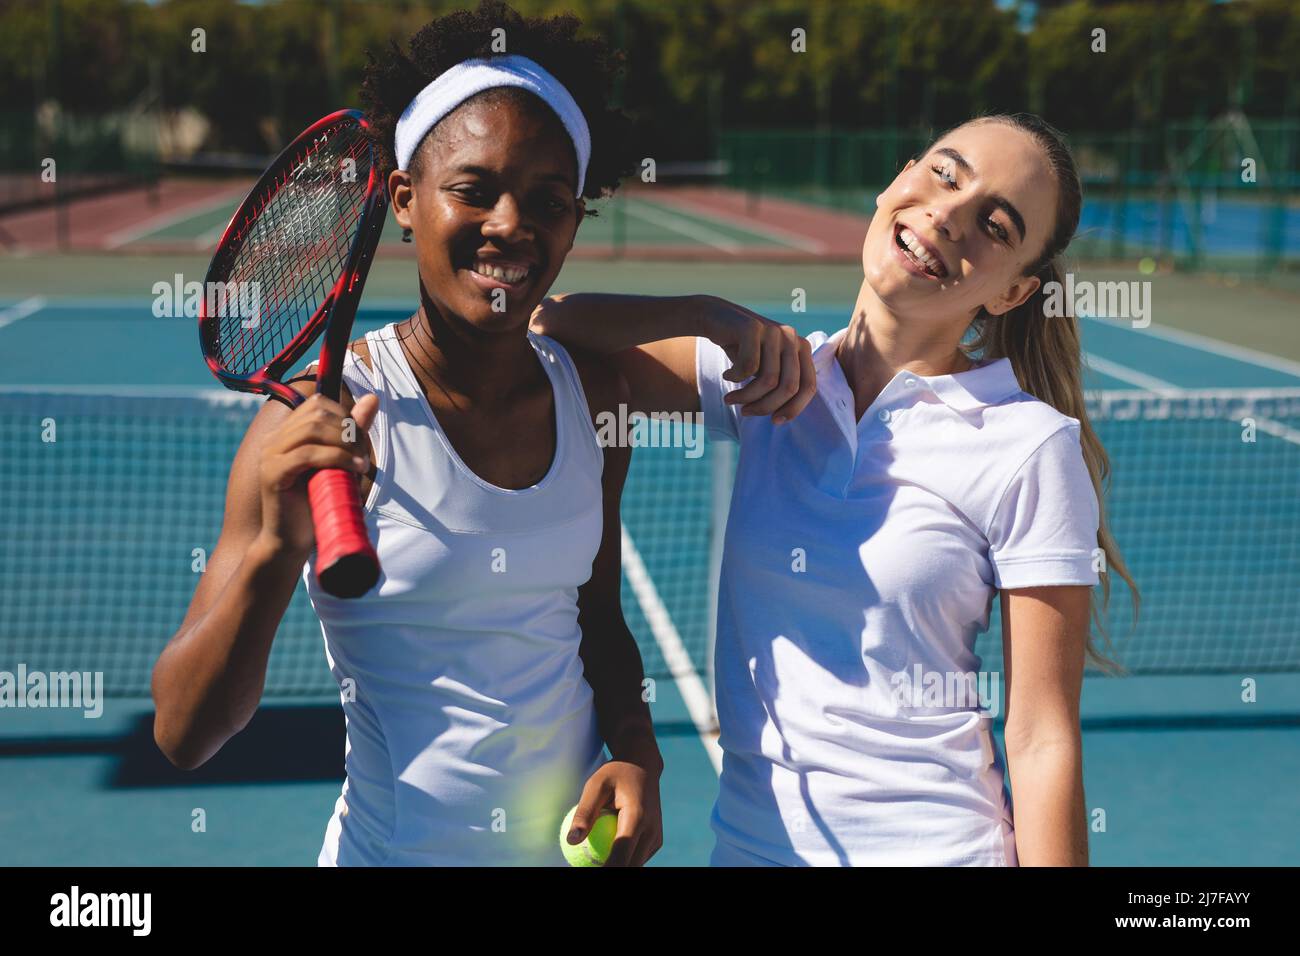 Portrait d'athlètes biraciaux heureux debout sur le court de tennis tout en prenant une pause le jour ensoleillé Banque D'Images